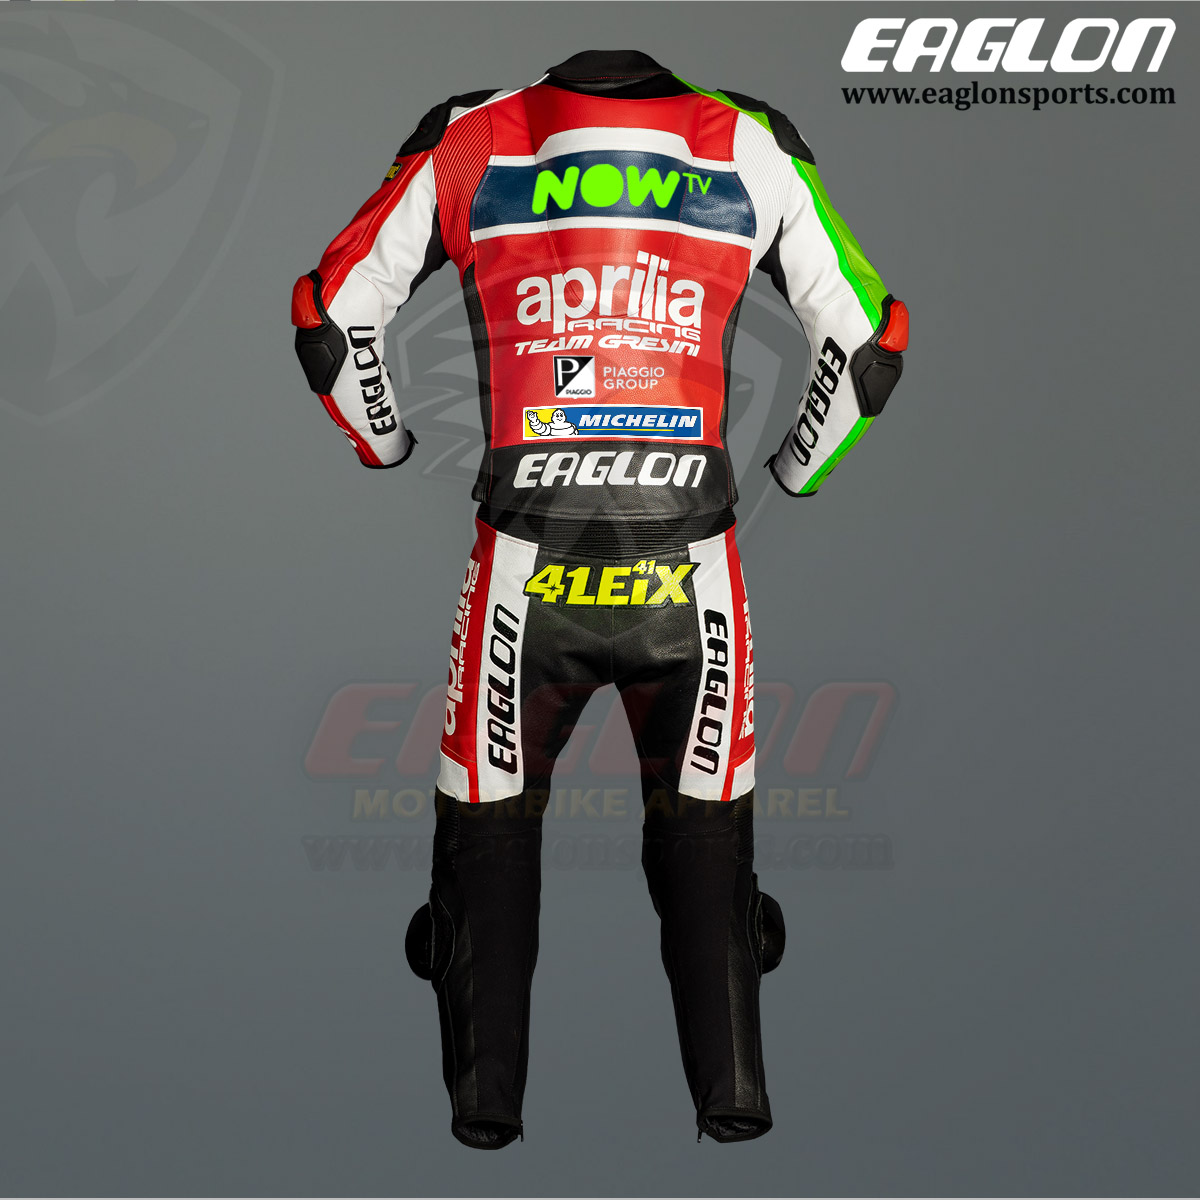 Aleix-Espargaro-Aprilia-NOW-Tv-MotoGP-2017-Leather-Riding-Suit